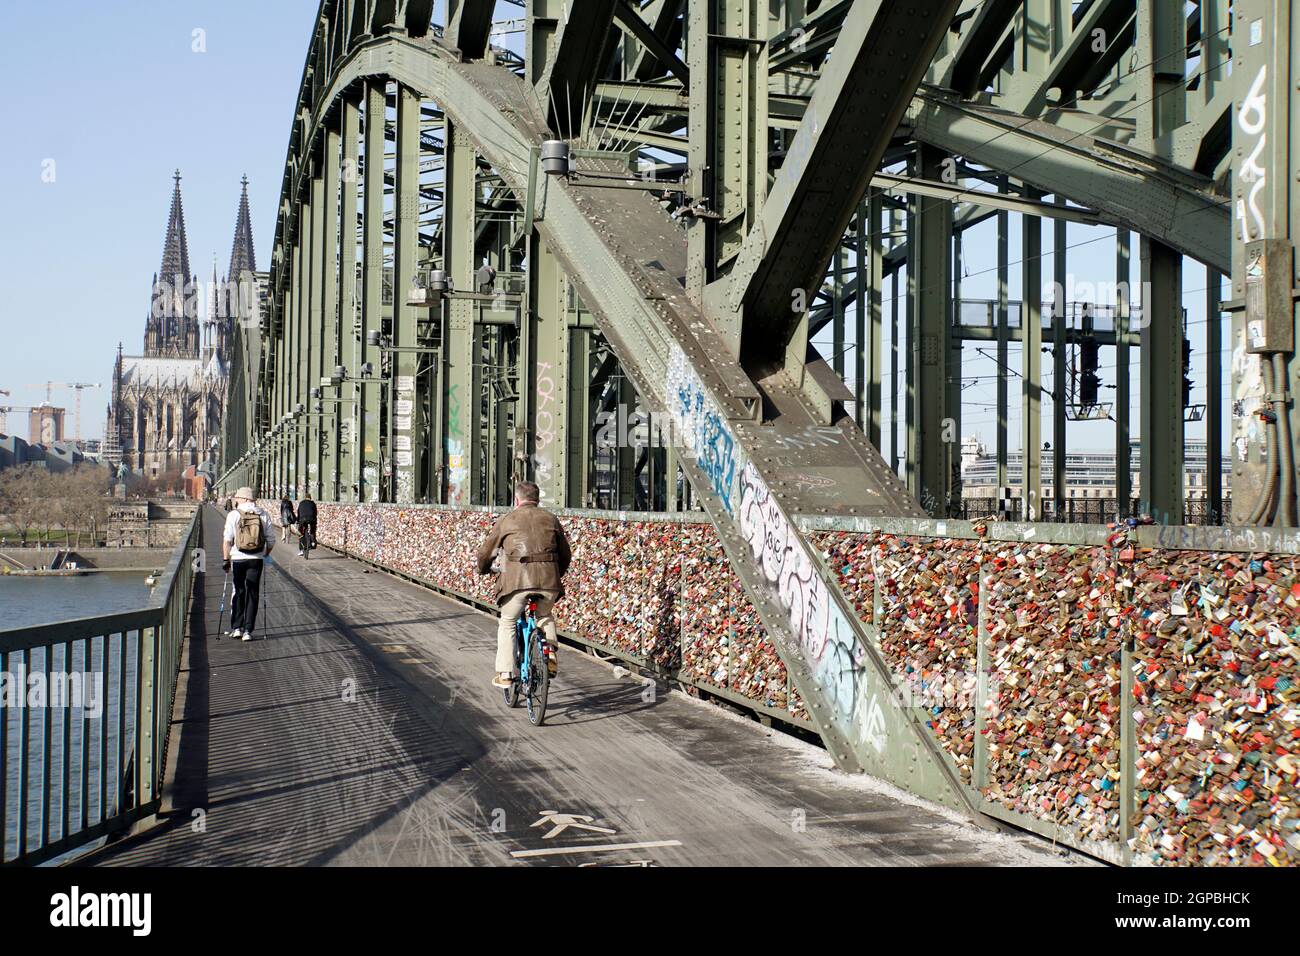 Touristenattraktion Liebsesschlösser auf der Hohenzollernbrücke, fast menschenleer während der Covid 19-Pandemie, Deutschland, Nordrhein-Westfalen, Kö Foto Stock